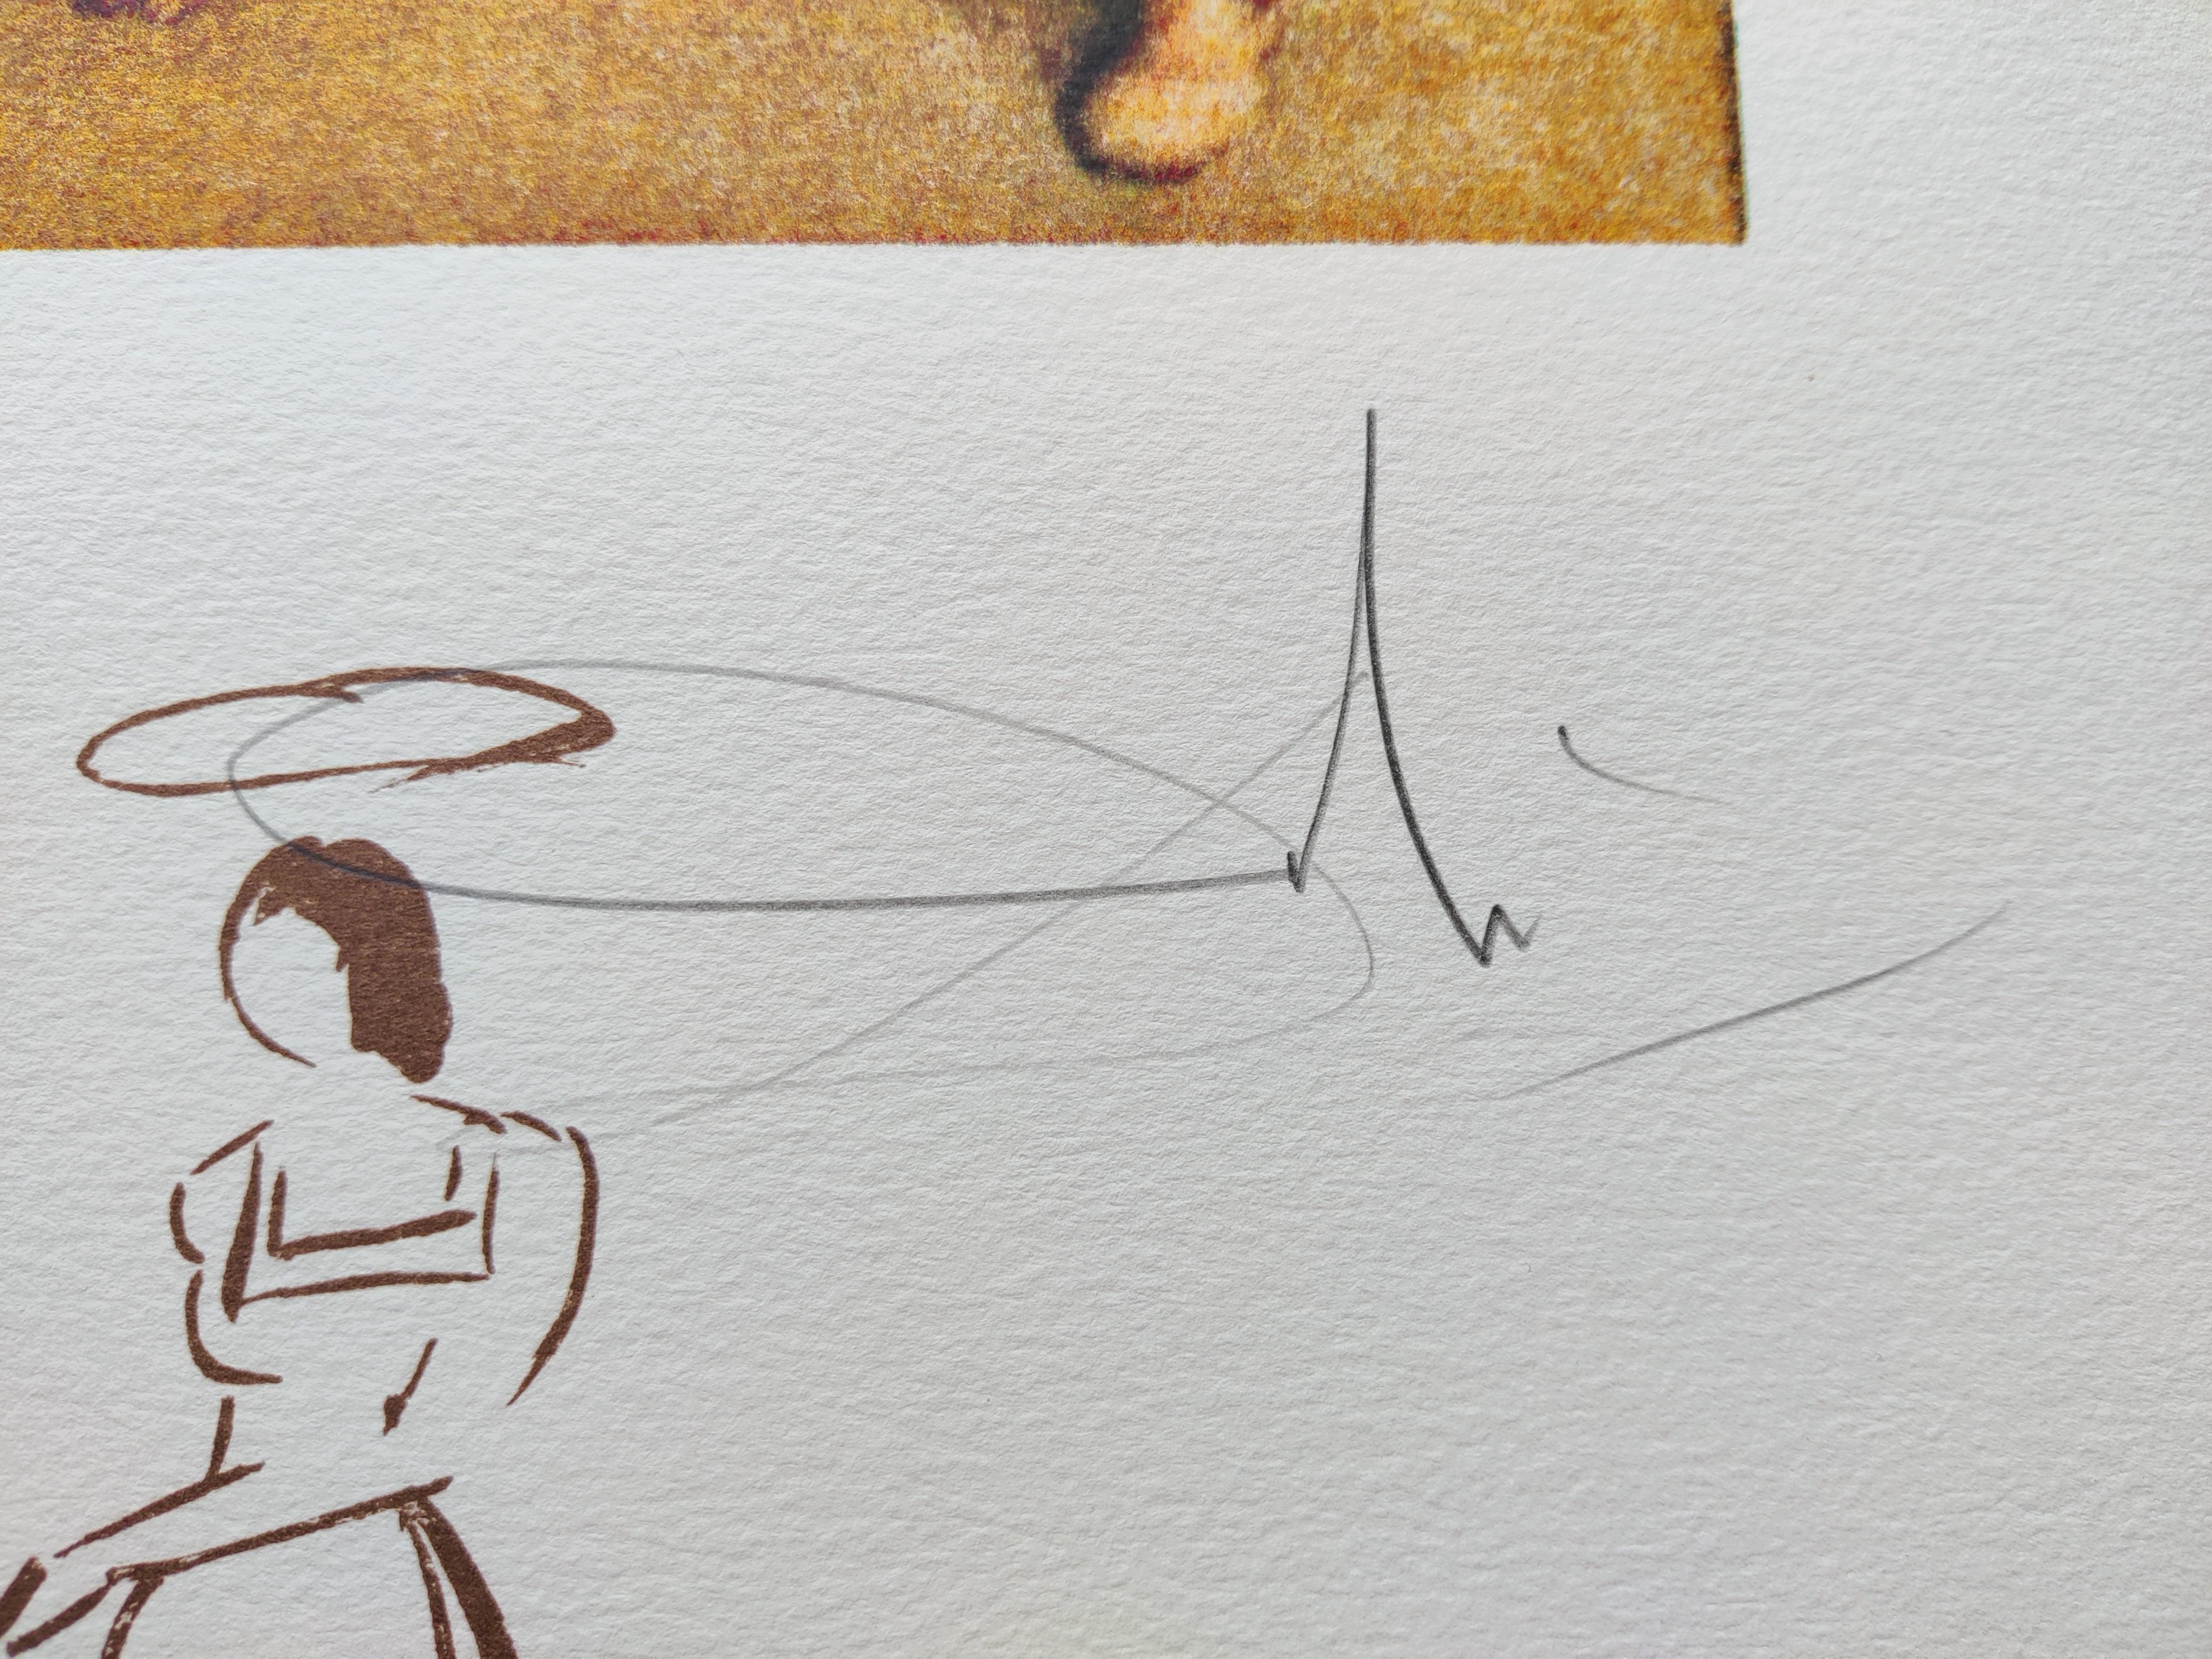 Salvador Dali
Raphael - Die Hochzeit der Vierge, 1974
Original-Lithographie, 1974
Bildgröße: 57,5 x 38,5 cm
Blattgröße: 89 x 56 cm
Handsigniert unten rechts
Links unten nummeriert 192/ 350.
Referenz: Albert Field, 